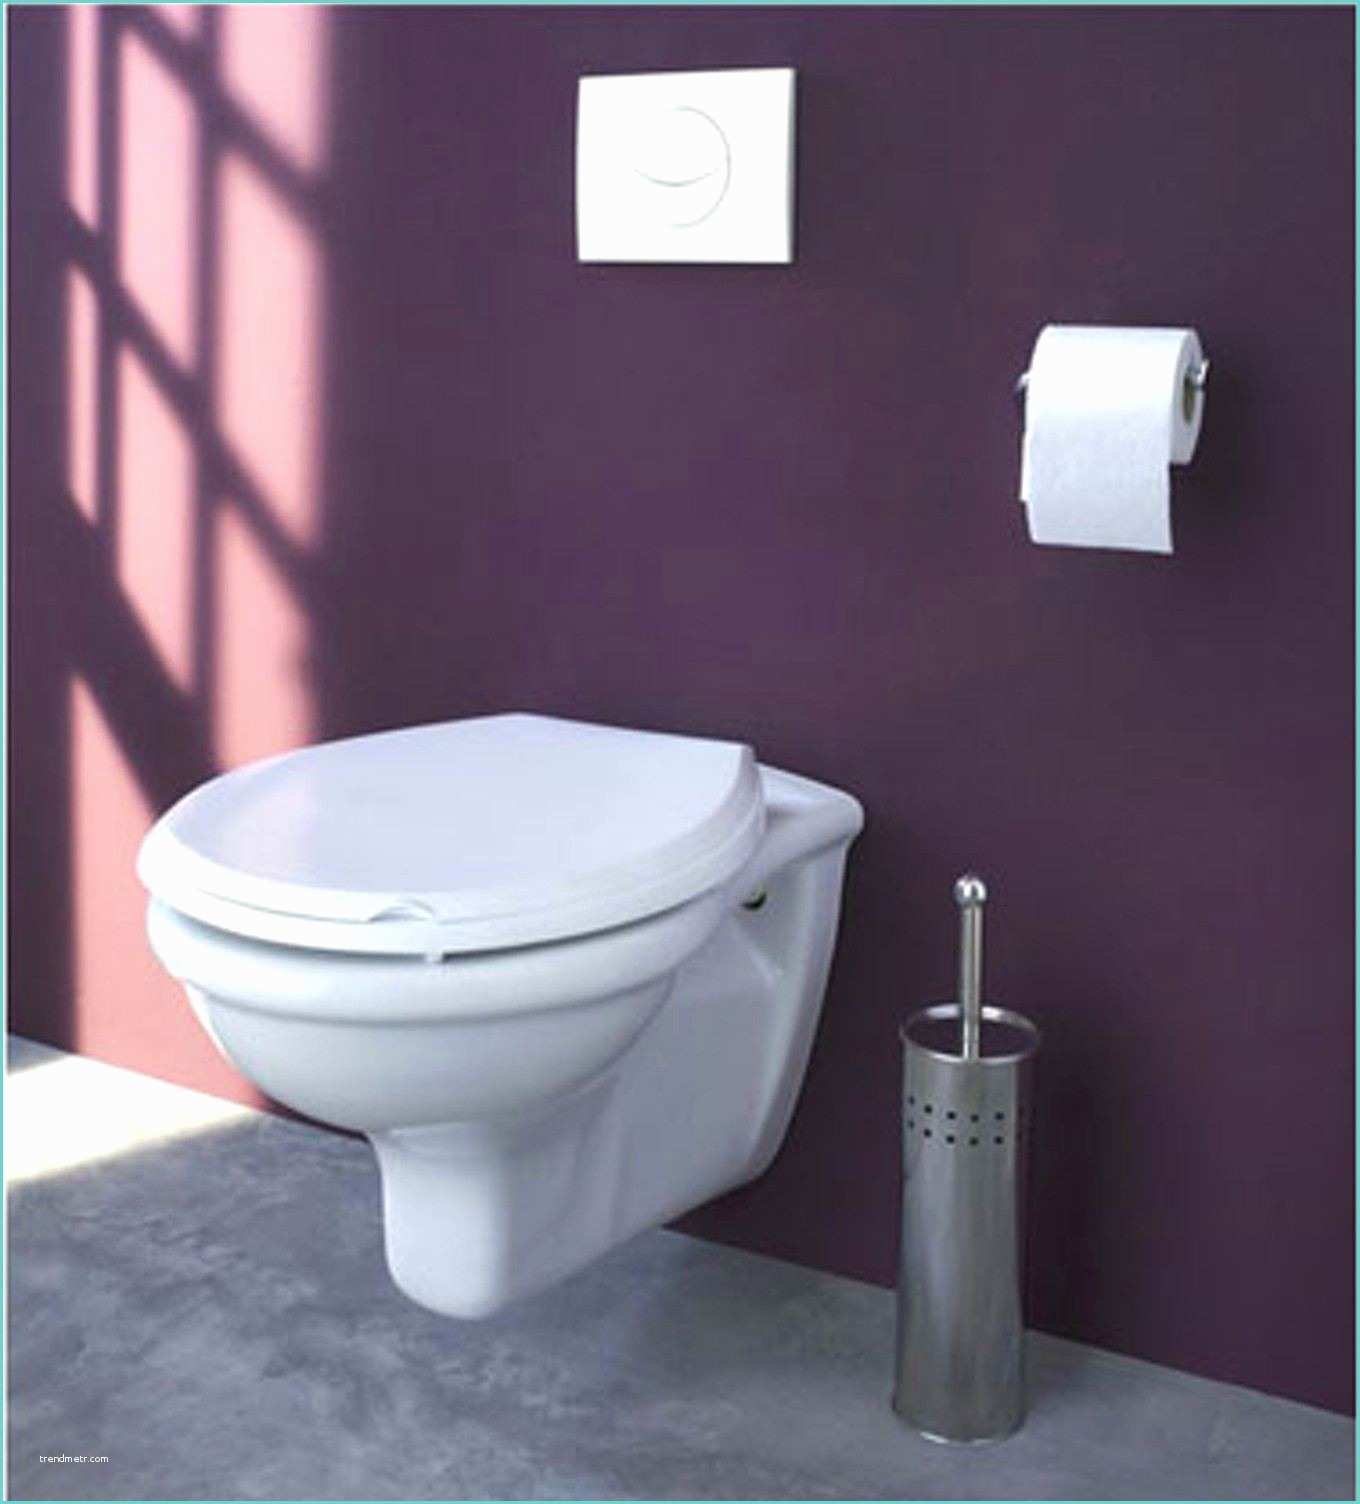 Couleur toilette Moderne Peinture Wc Moderne Design De Maison Idee Couleur Peinture